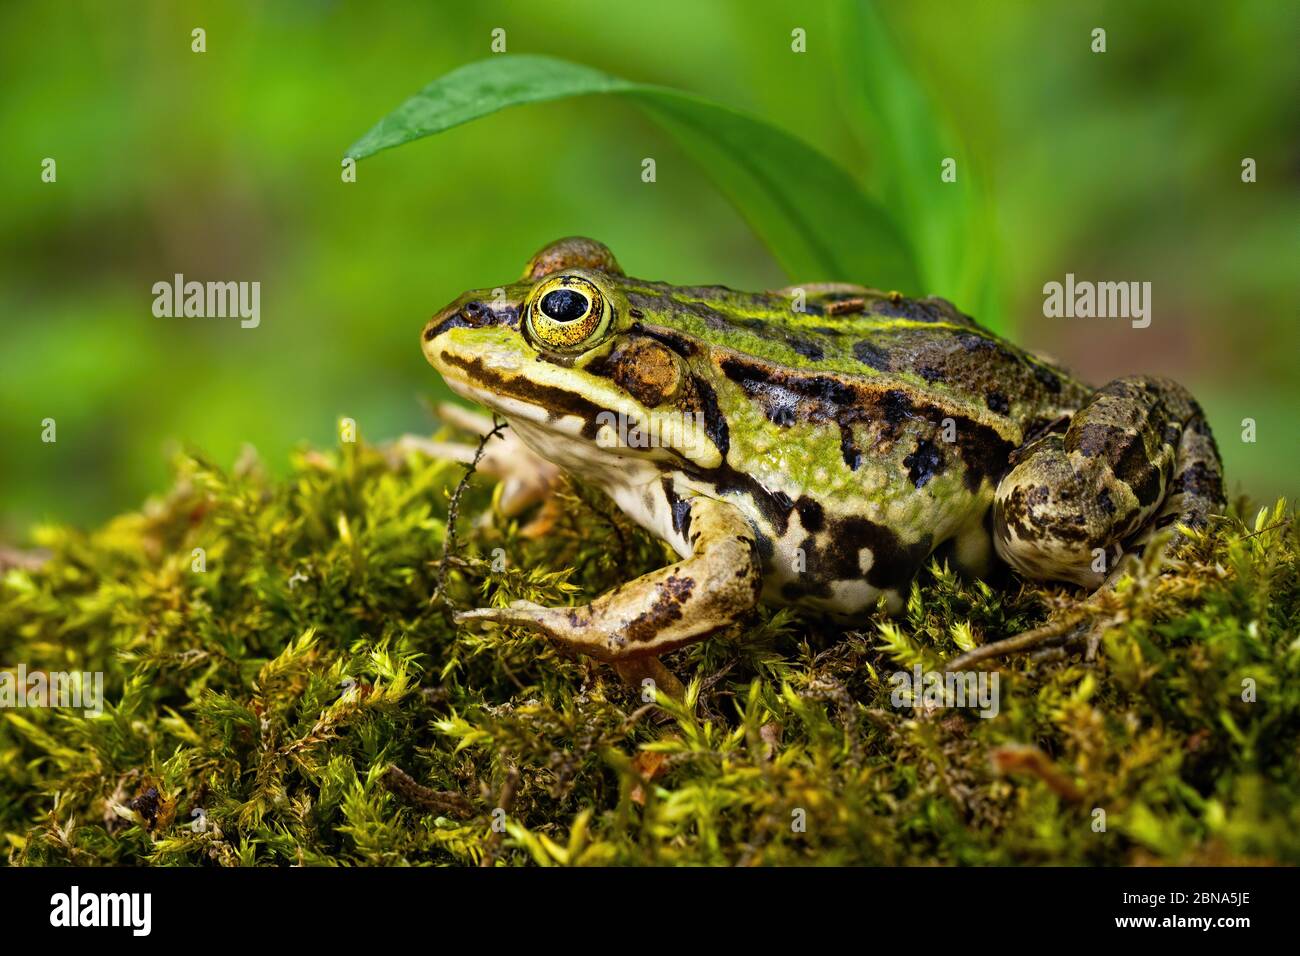 Unauffällig essbarer Frosch versteckt sich im Sommer unter einem grünen Blatt Stockfoto